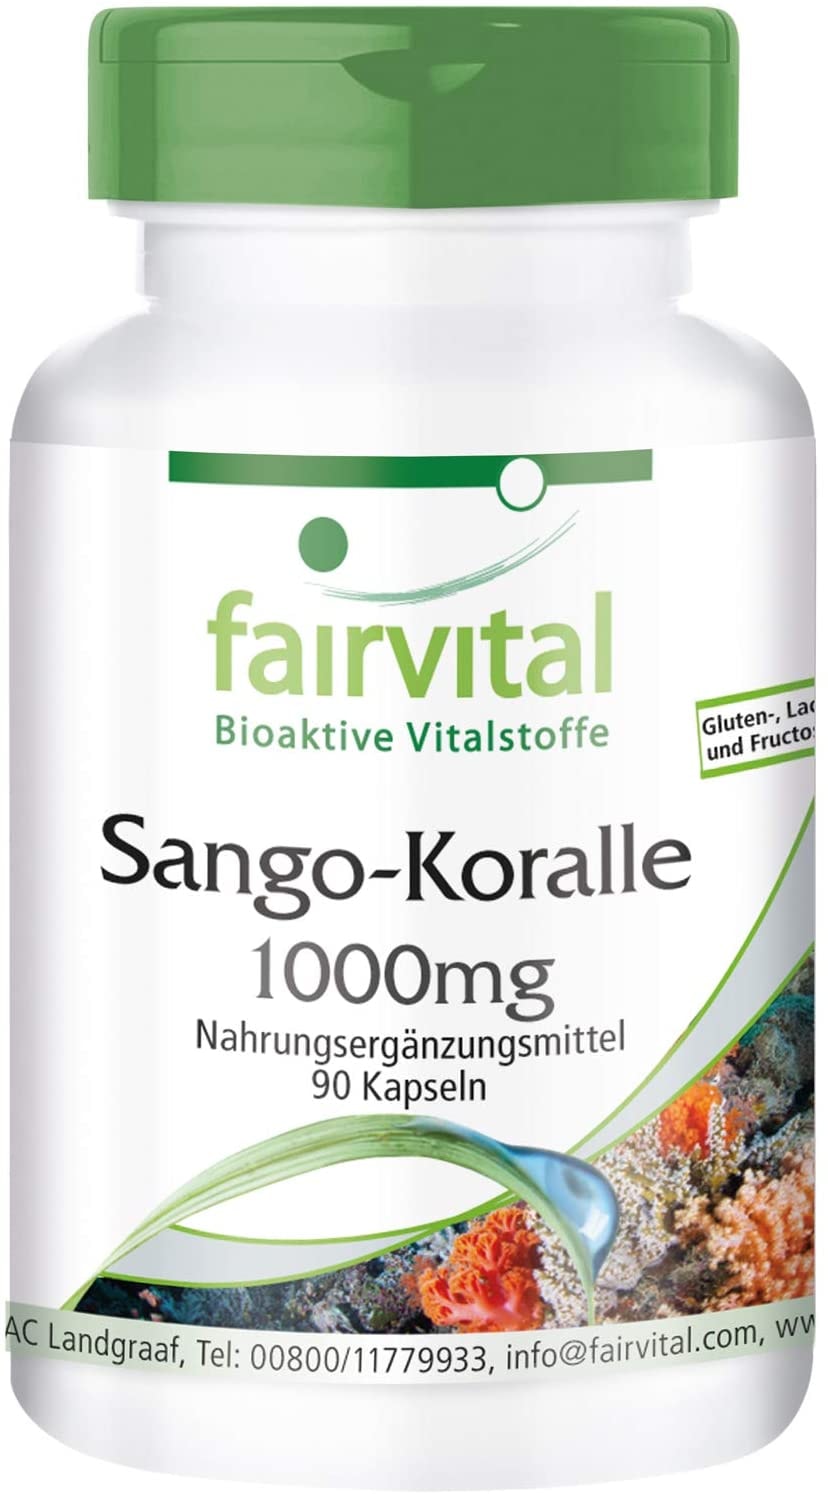 fairvital - Sango Koralle Kapseln 1000mg - VEGAN - 90 Kapseln - enthält 340mg Calcium pro Kapsel